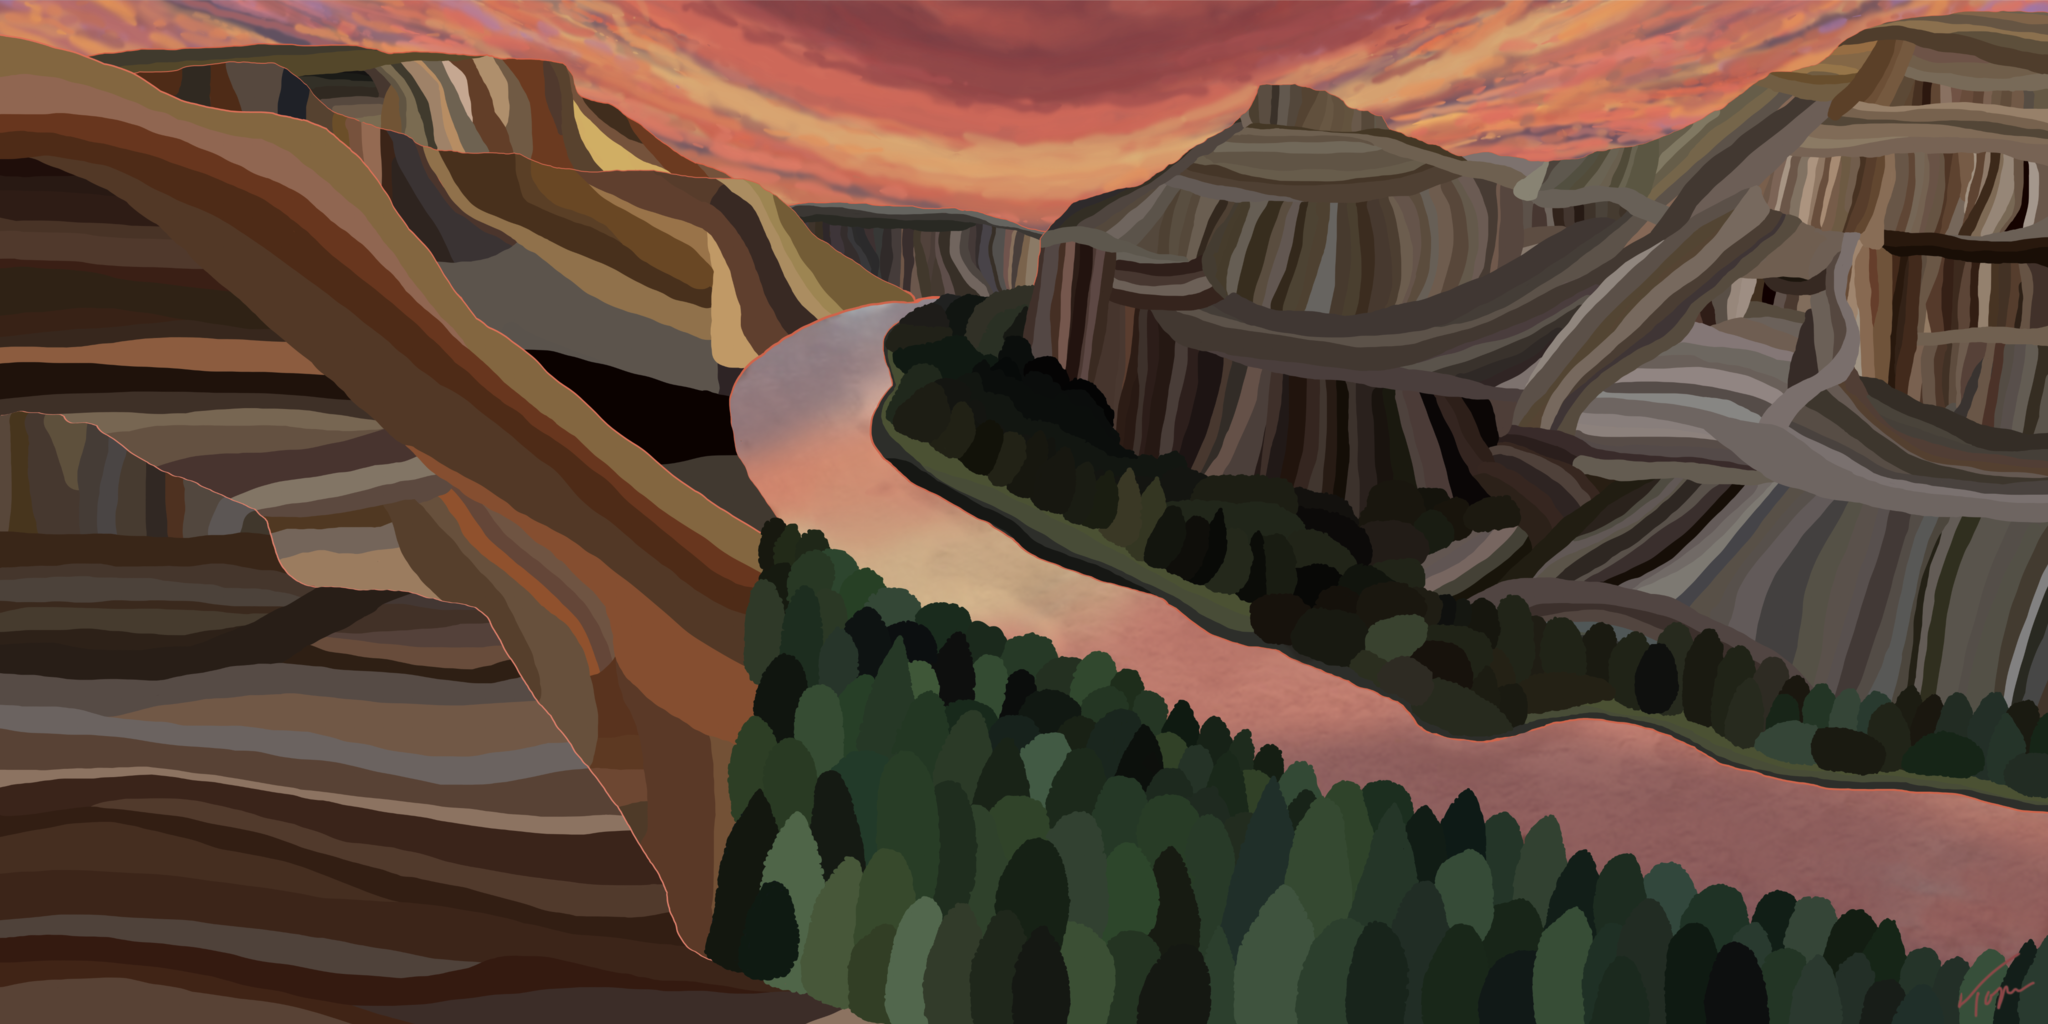 Parc national de Big Bend, paysage impressionniste contemporain, 2021, édition limitée